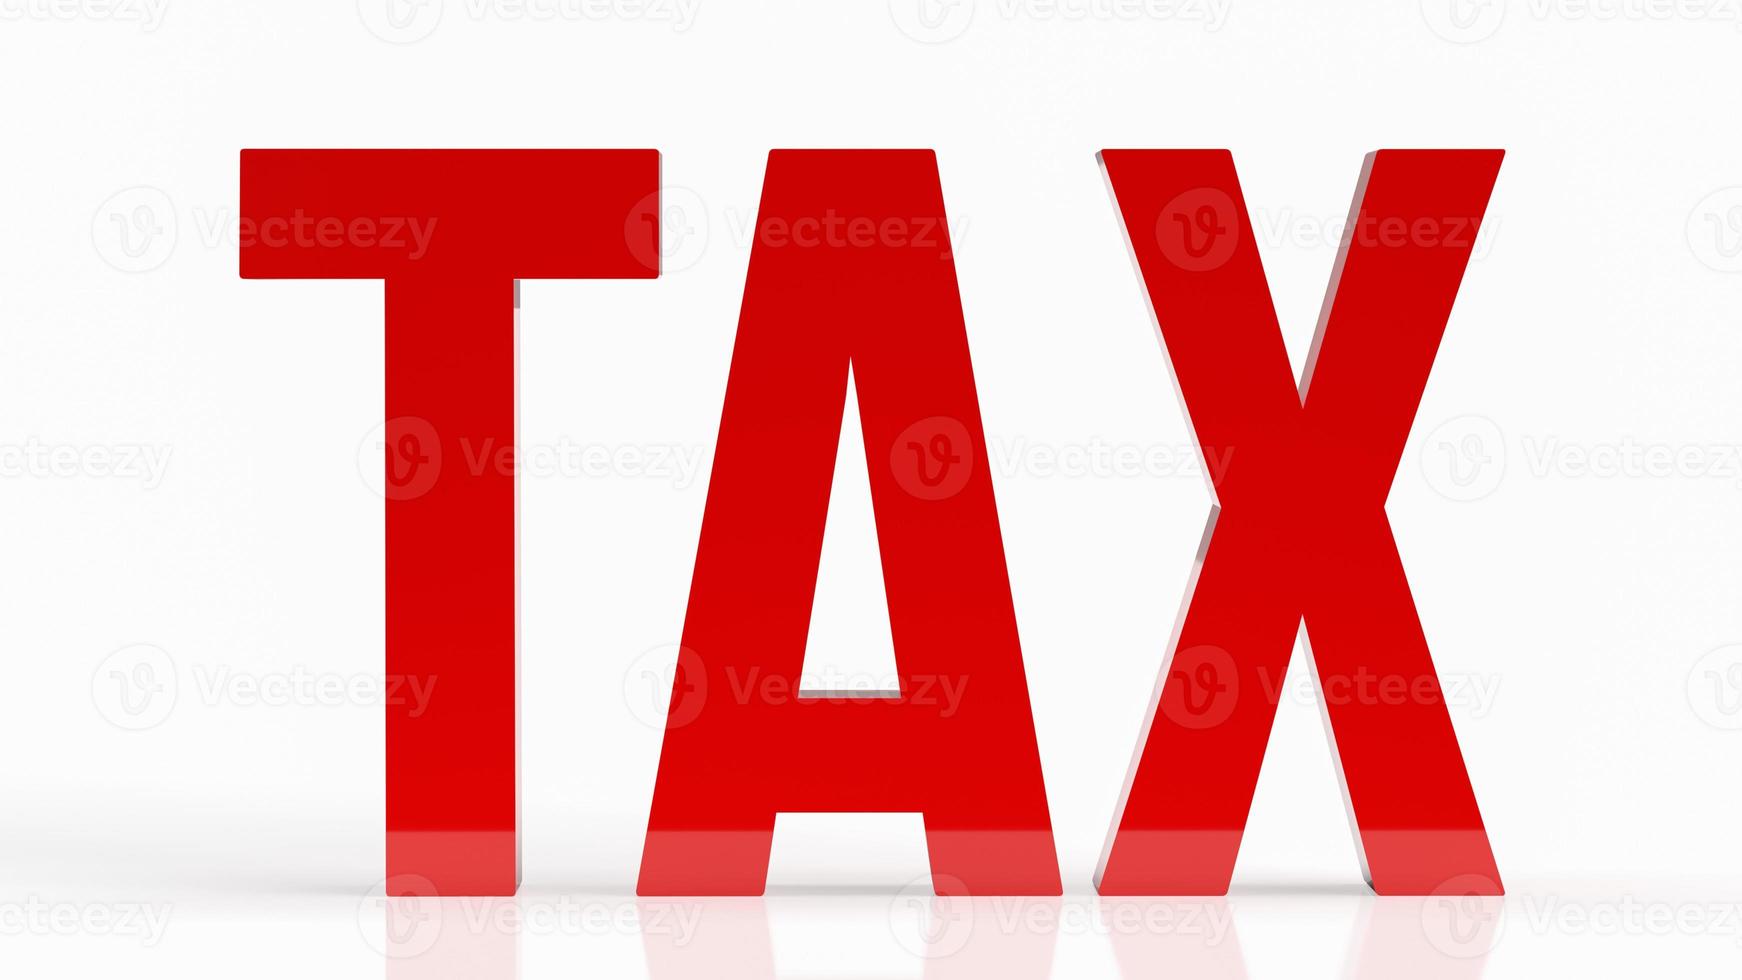 el impuesto rojo sobre fondo blanco para la representación 3d del concepto de negocio foto